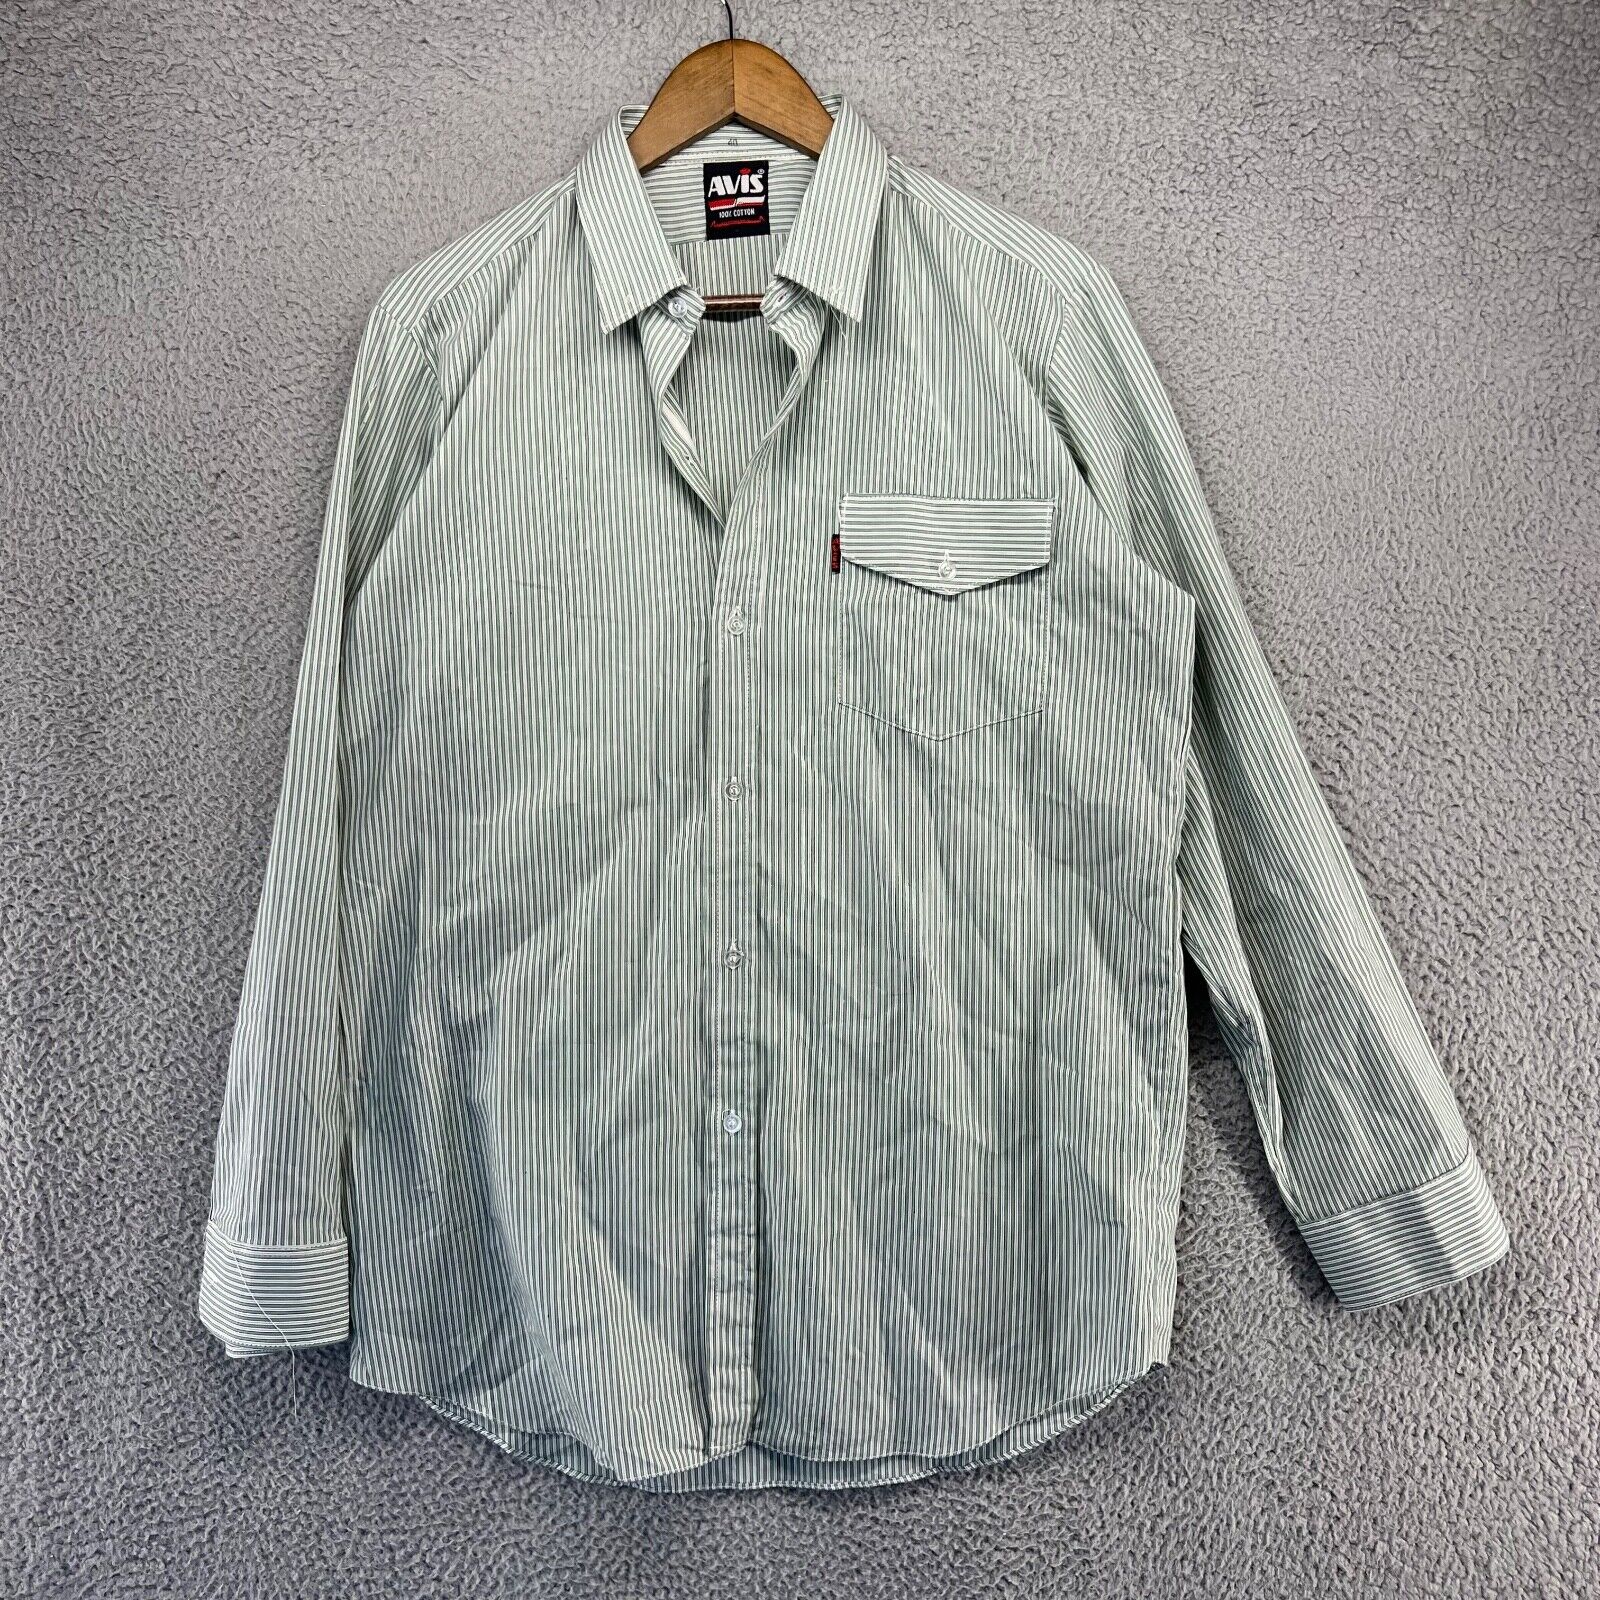 Vintage Avis Shirt Men\'s 40 Medium Green White Striped Rockabilly Pocket 70s 80s